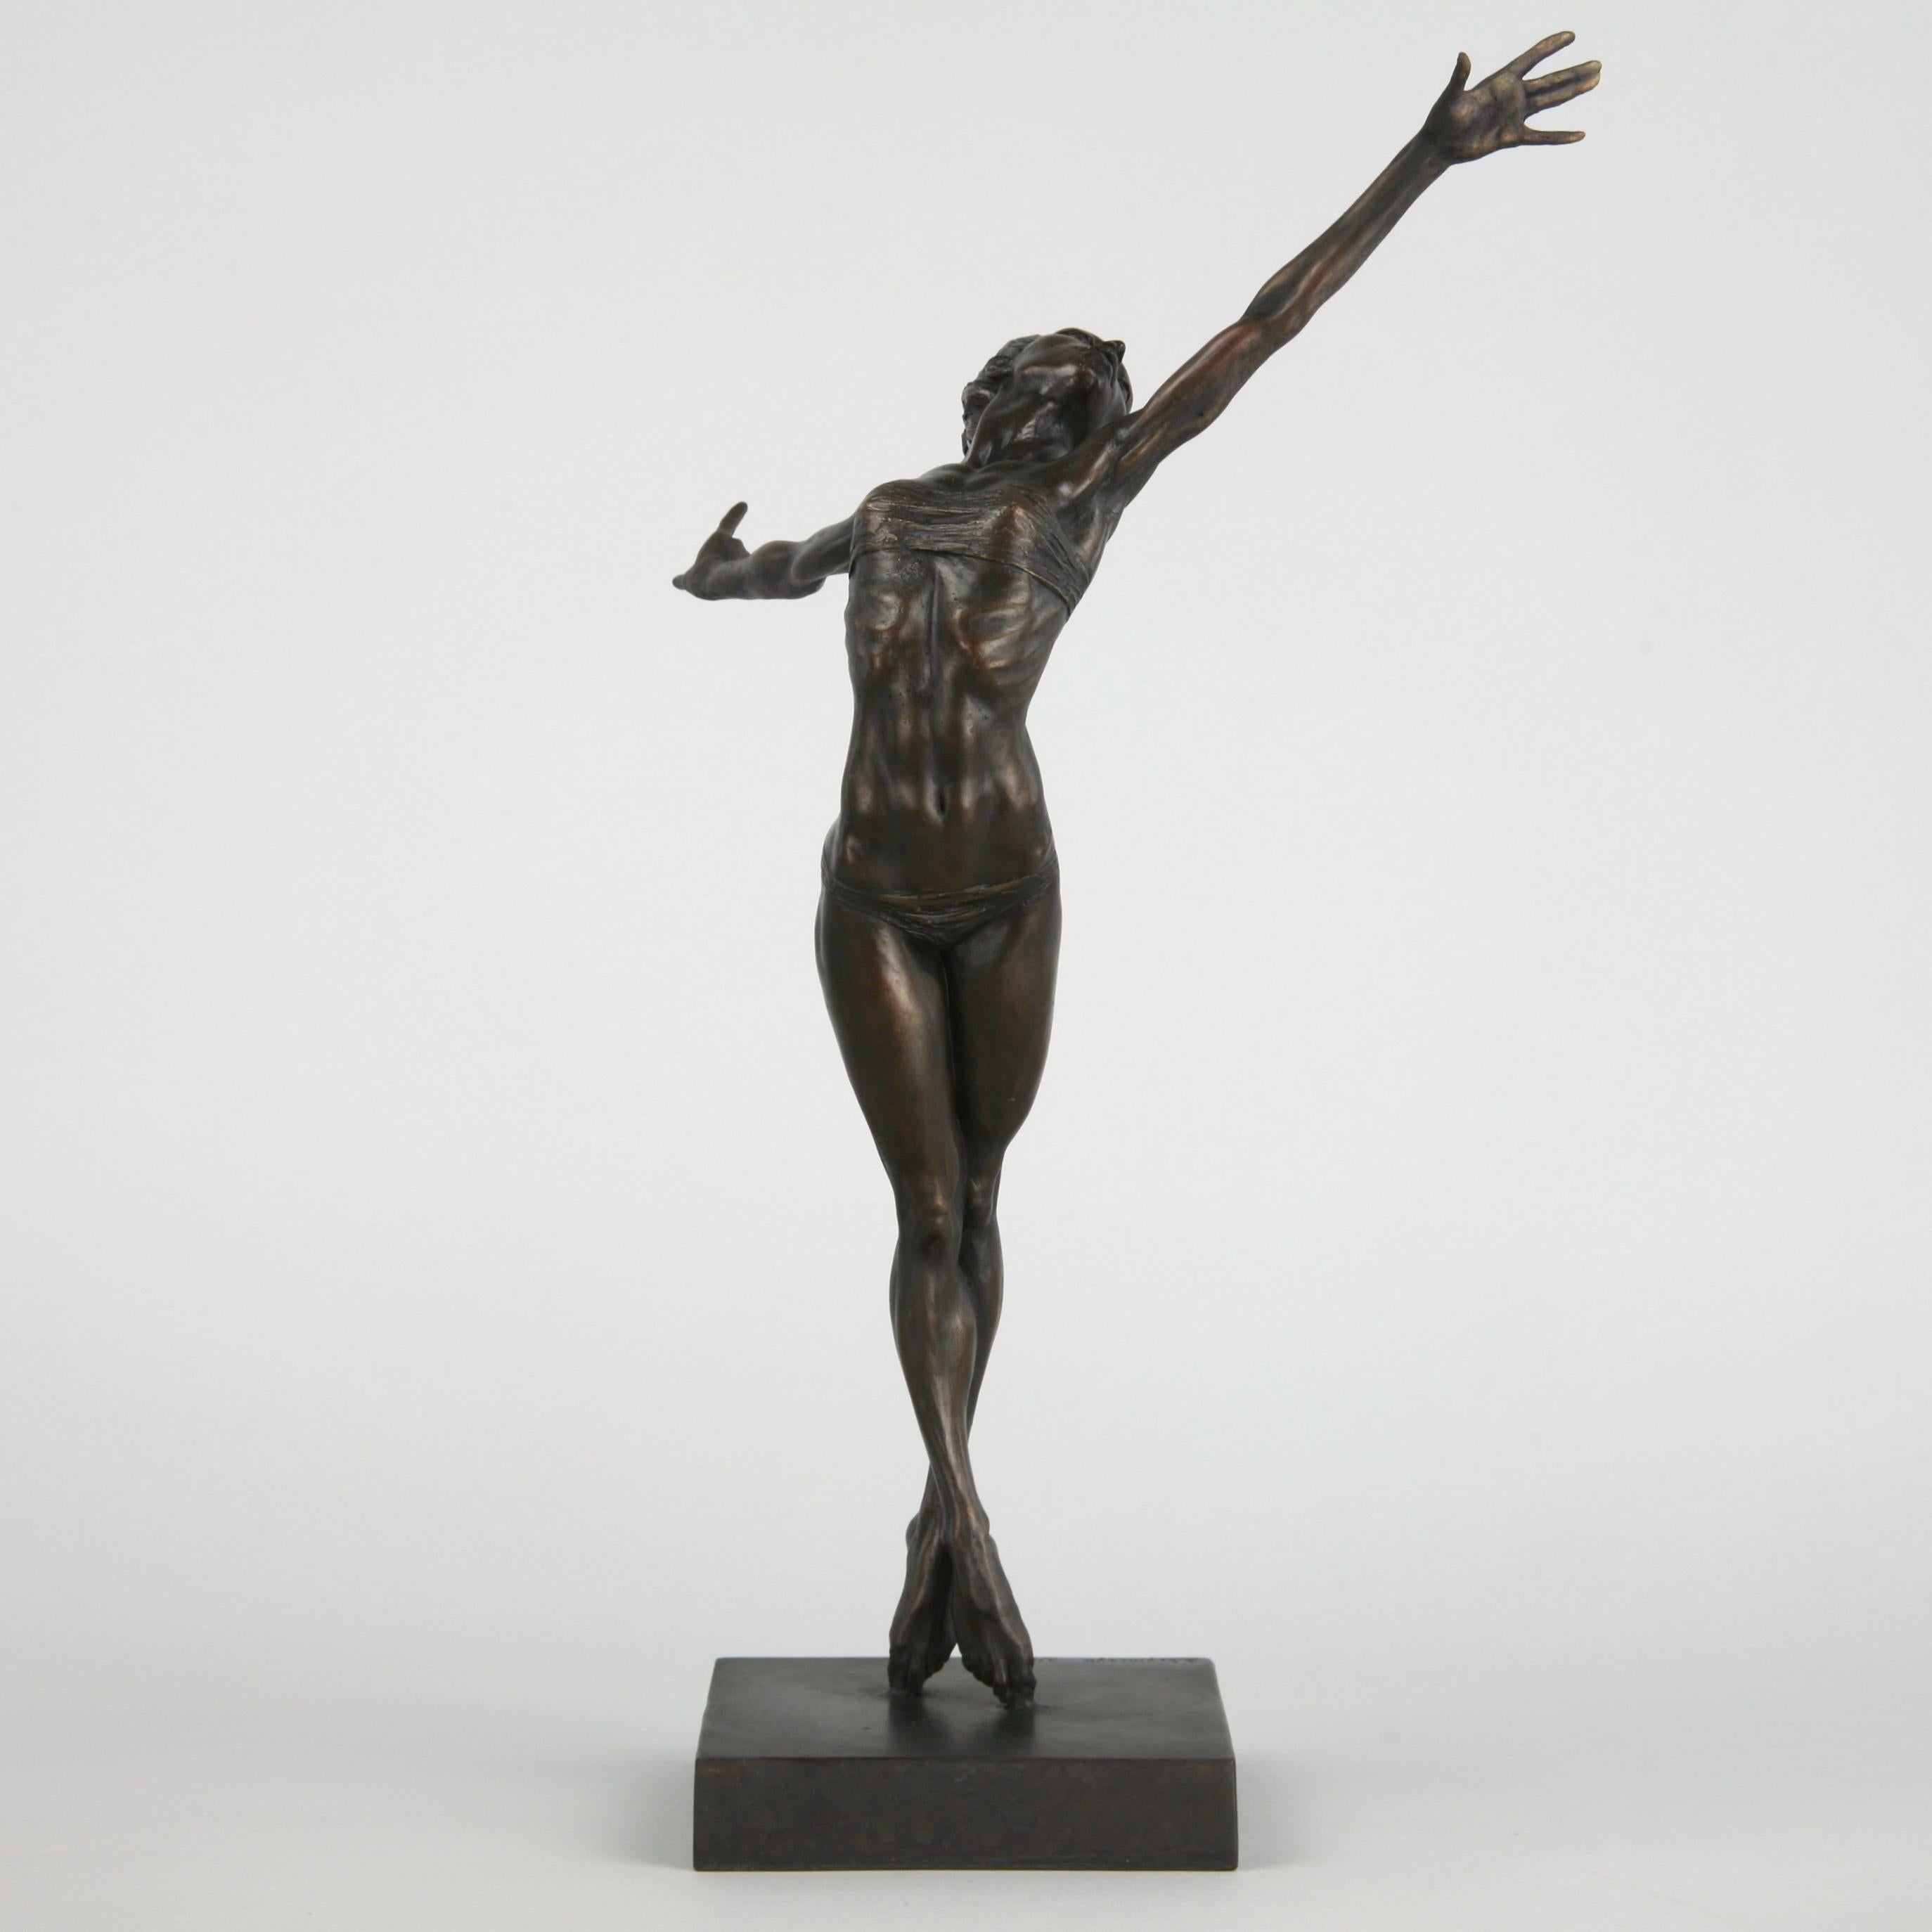 Pole Dancer-original nude figurative bronze sculpture-artwork-contemporary Art - Sculpture by Andrzej Szymczyk